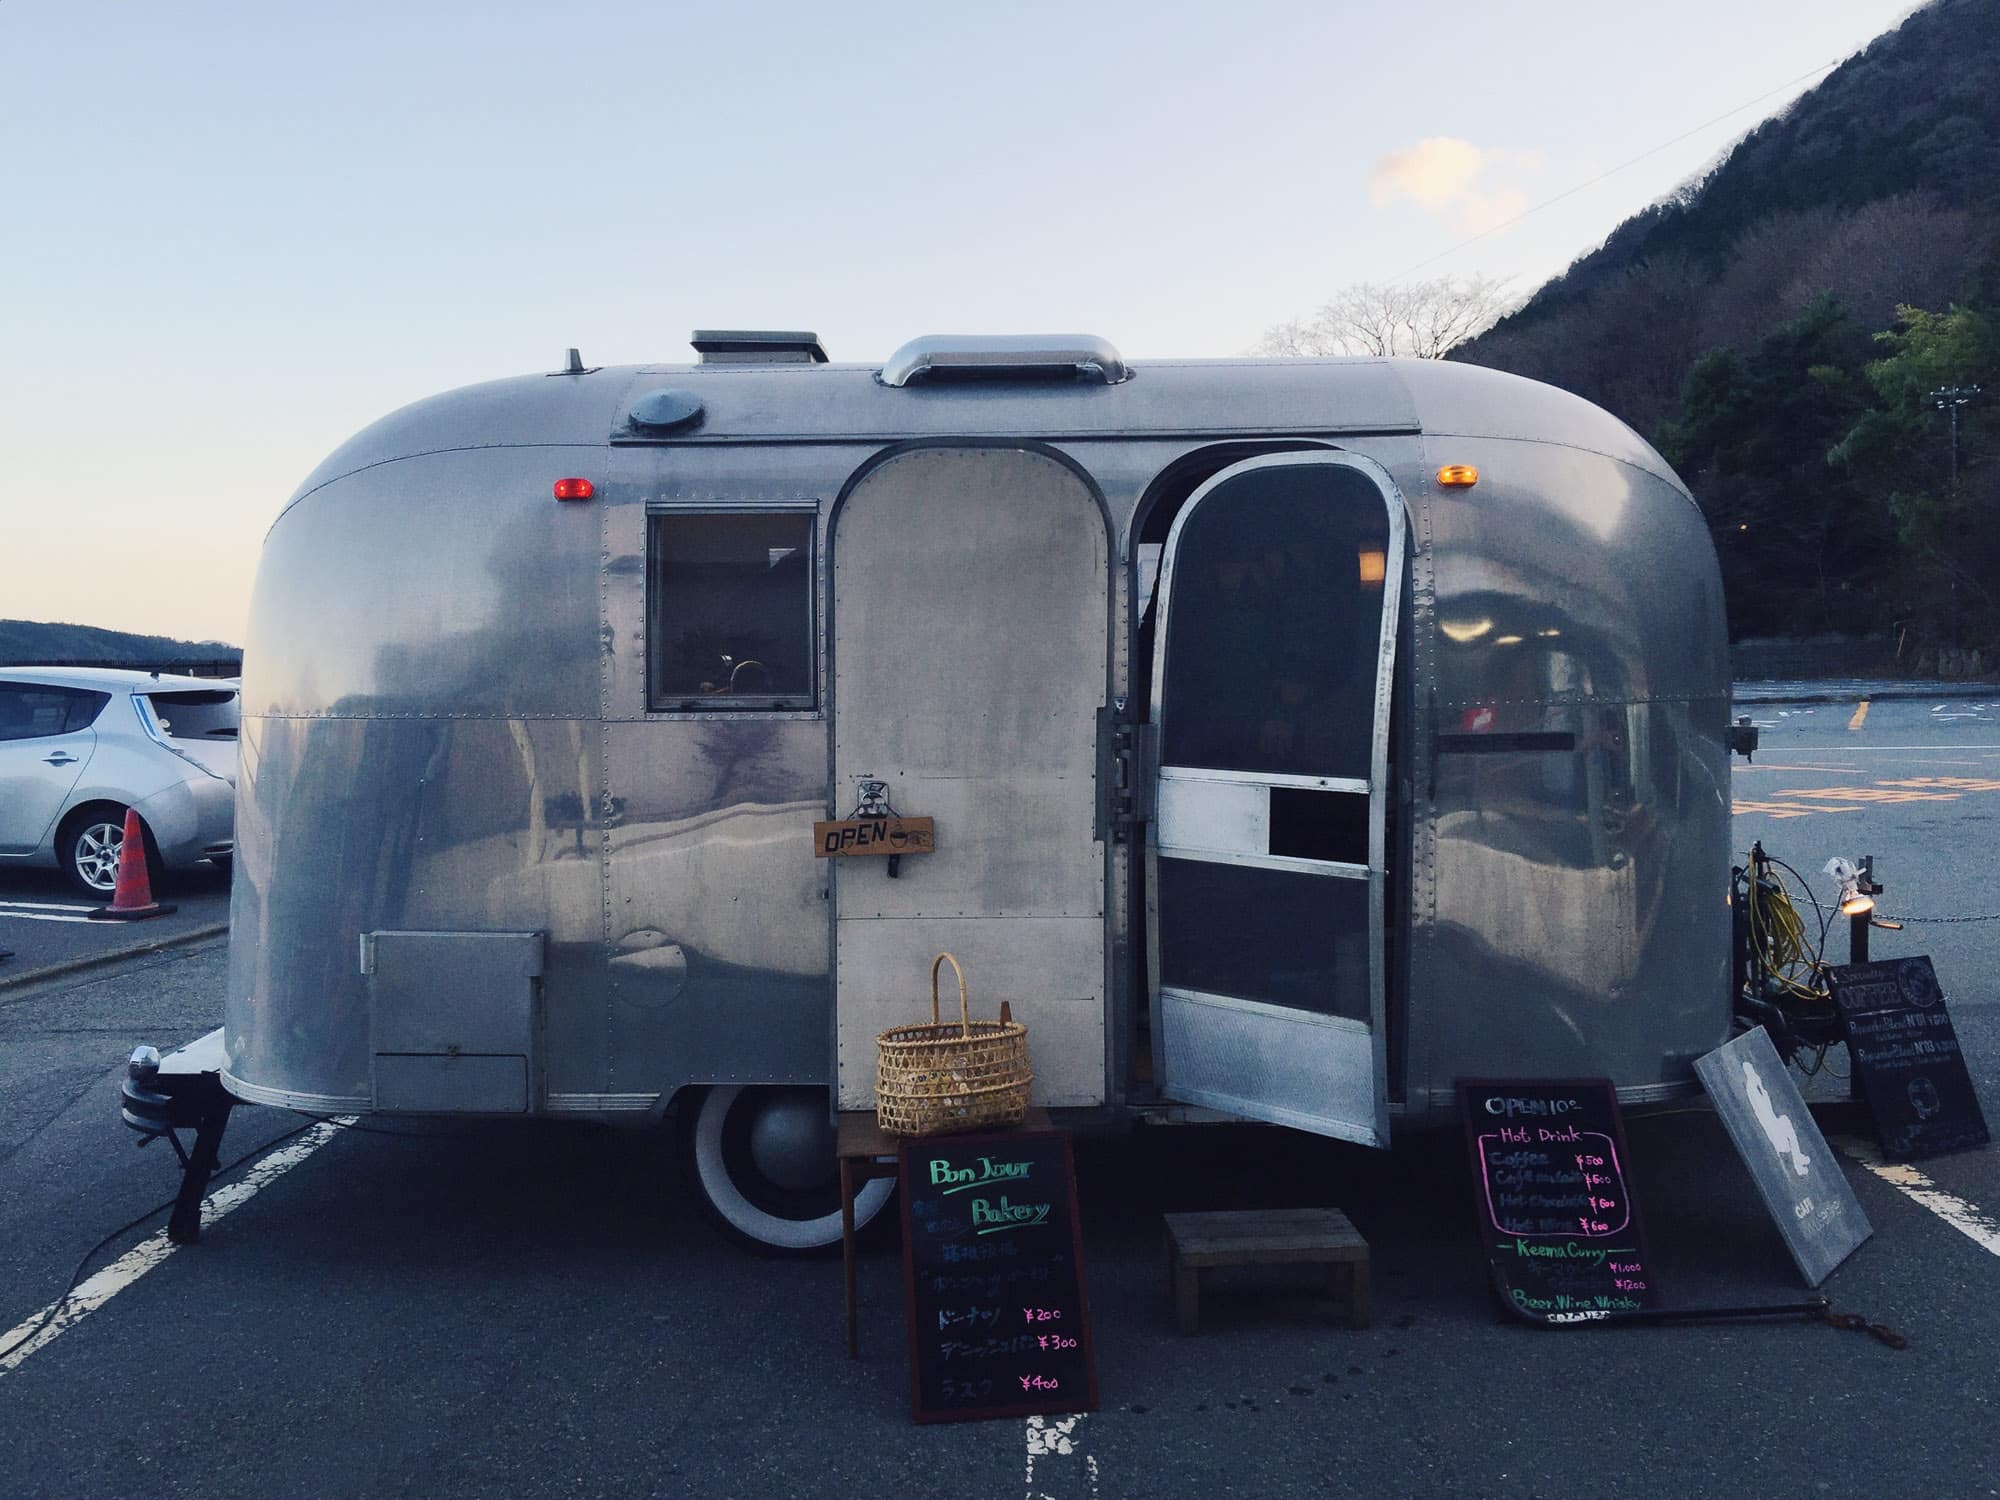 Instagramming Japan - caravan cafe in Hakone